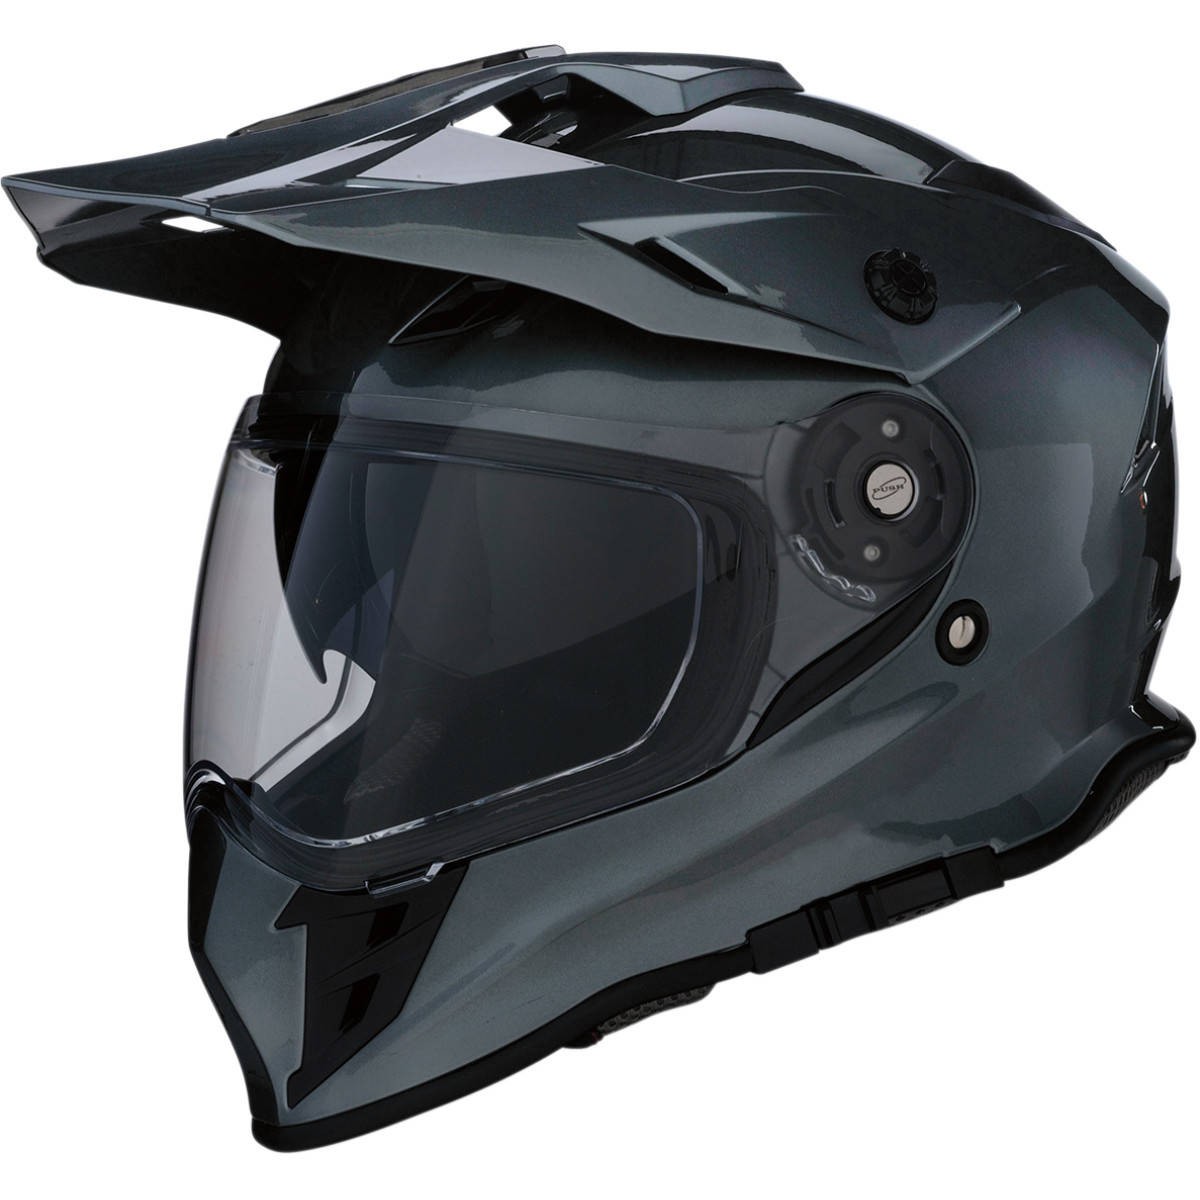 Z1R Range Dual Sport Helmet - Dual Sport - Motorcycle Helmets - Motorcycle | FortNine Canada